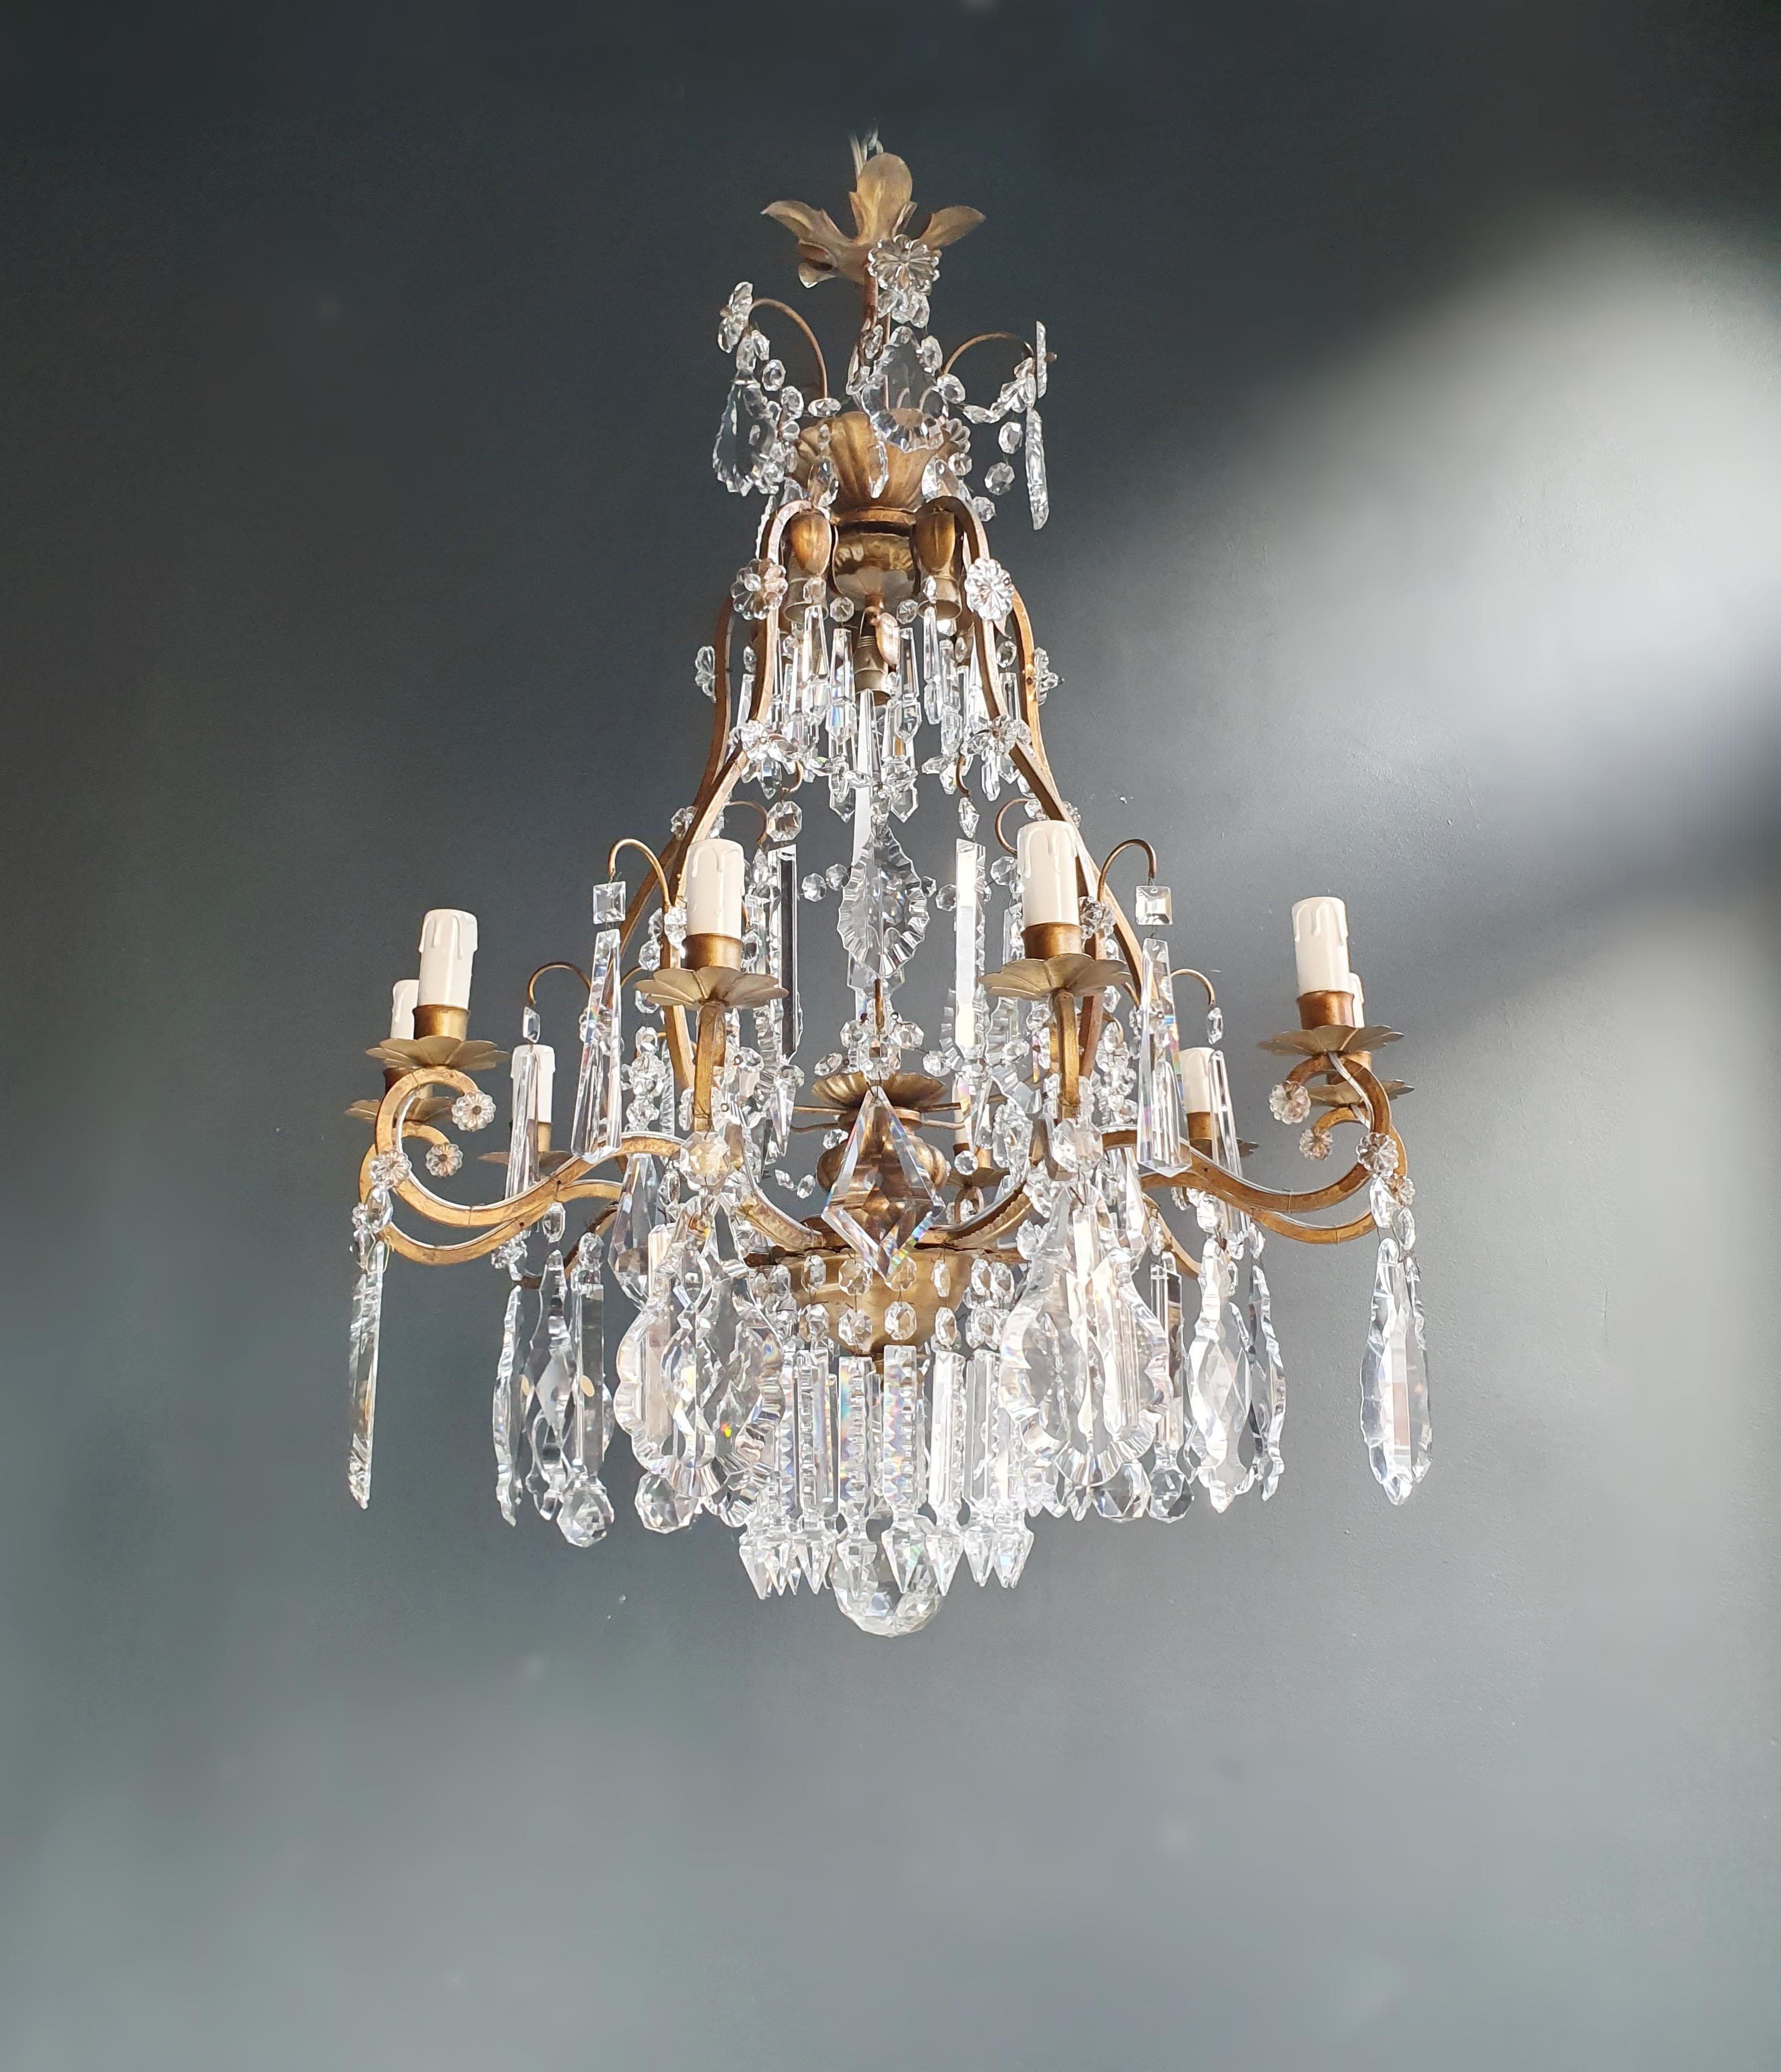 Fine Brass Crystal Chandelier Antique Ceiling Lamp Lustre Art Nouveau Lamp, 1900 For Sale 2